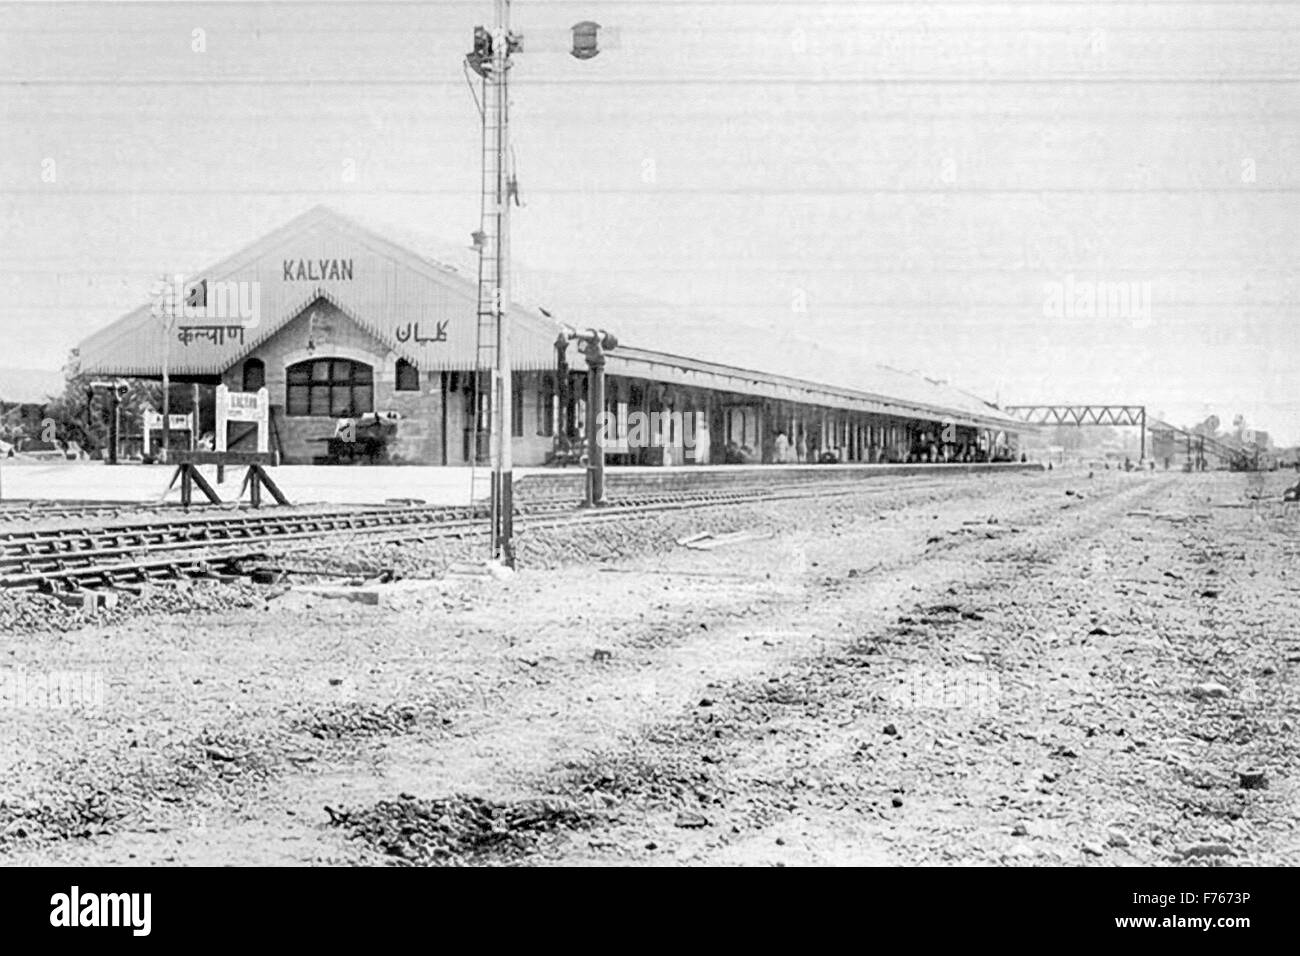 Kalyan Railway Station, Kalyan, Thane, Maharashtra, India, Asia, old vintage 1900s picture Stock Photo